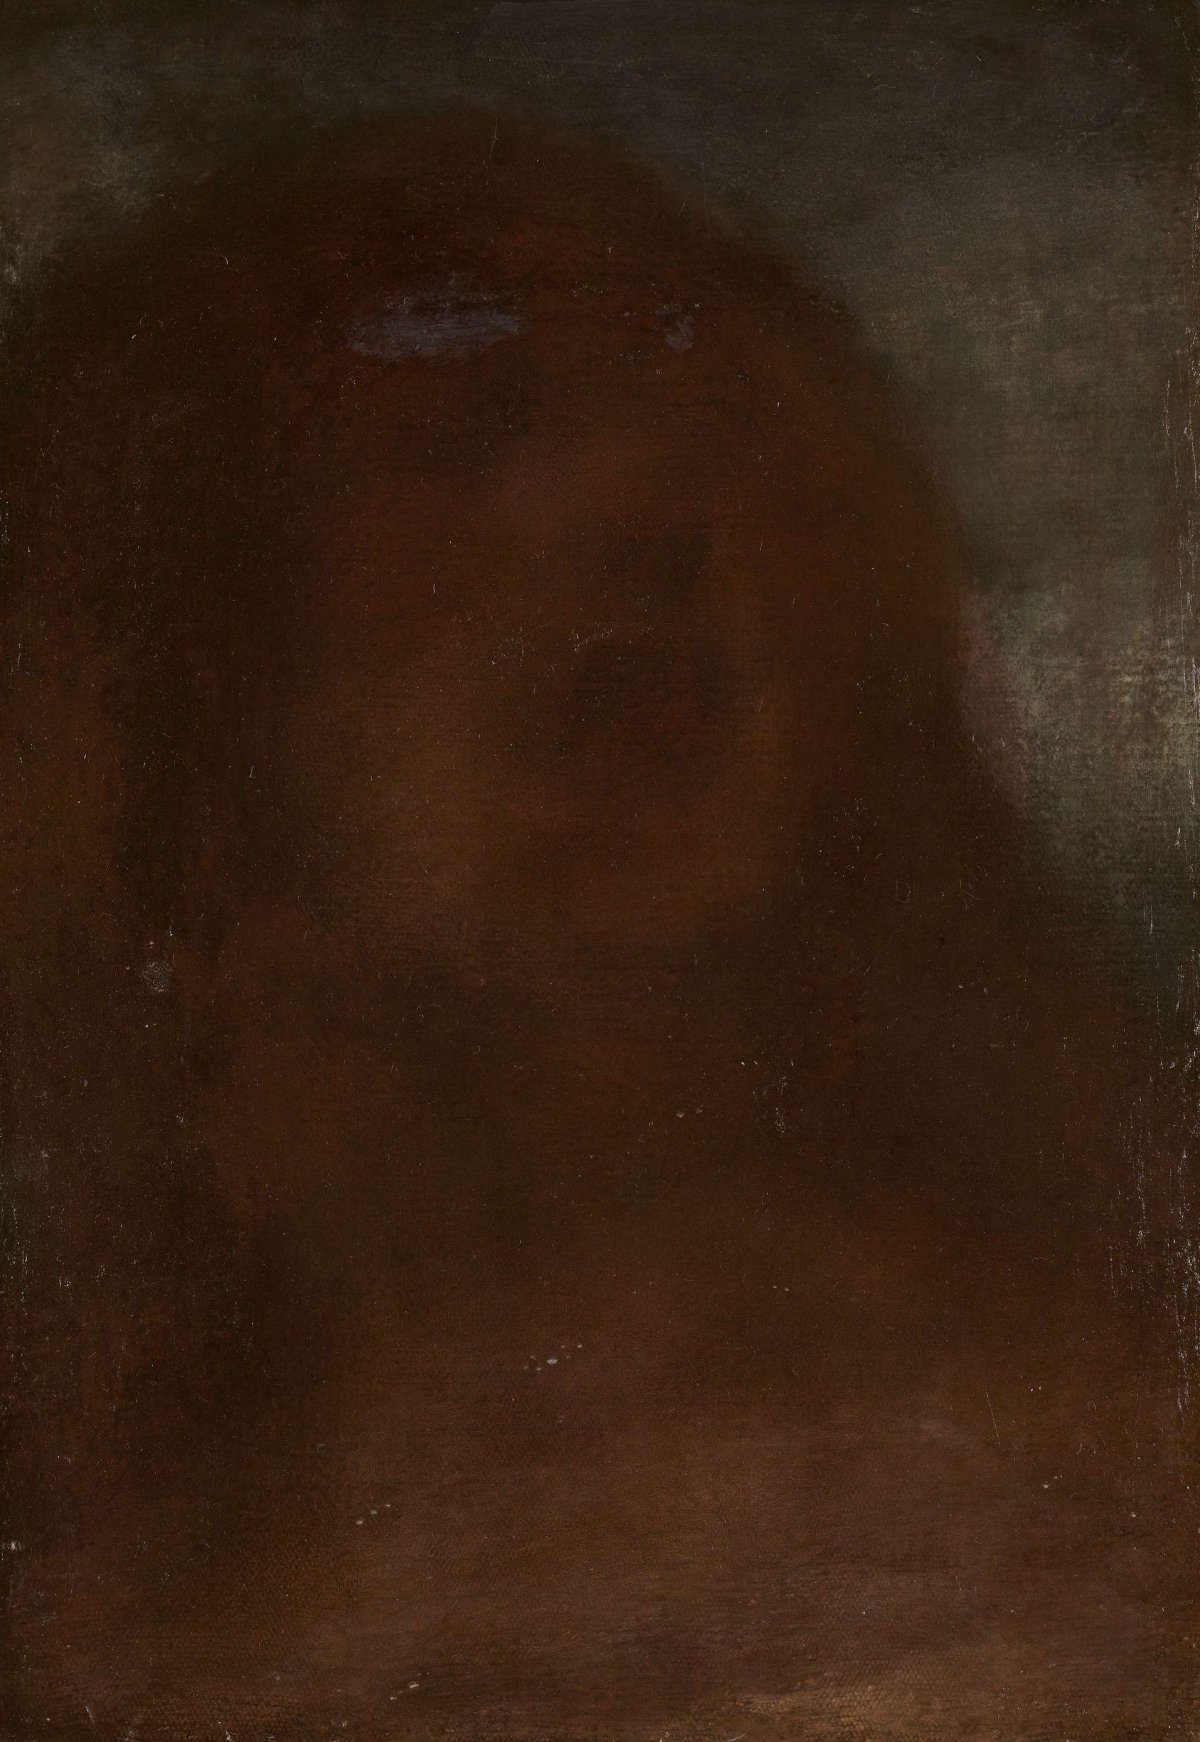 Head of a woman, called 'A fair beauty', Matthijs Maris, 1870 - 1912